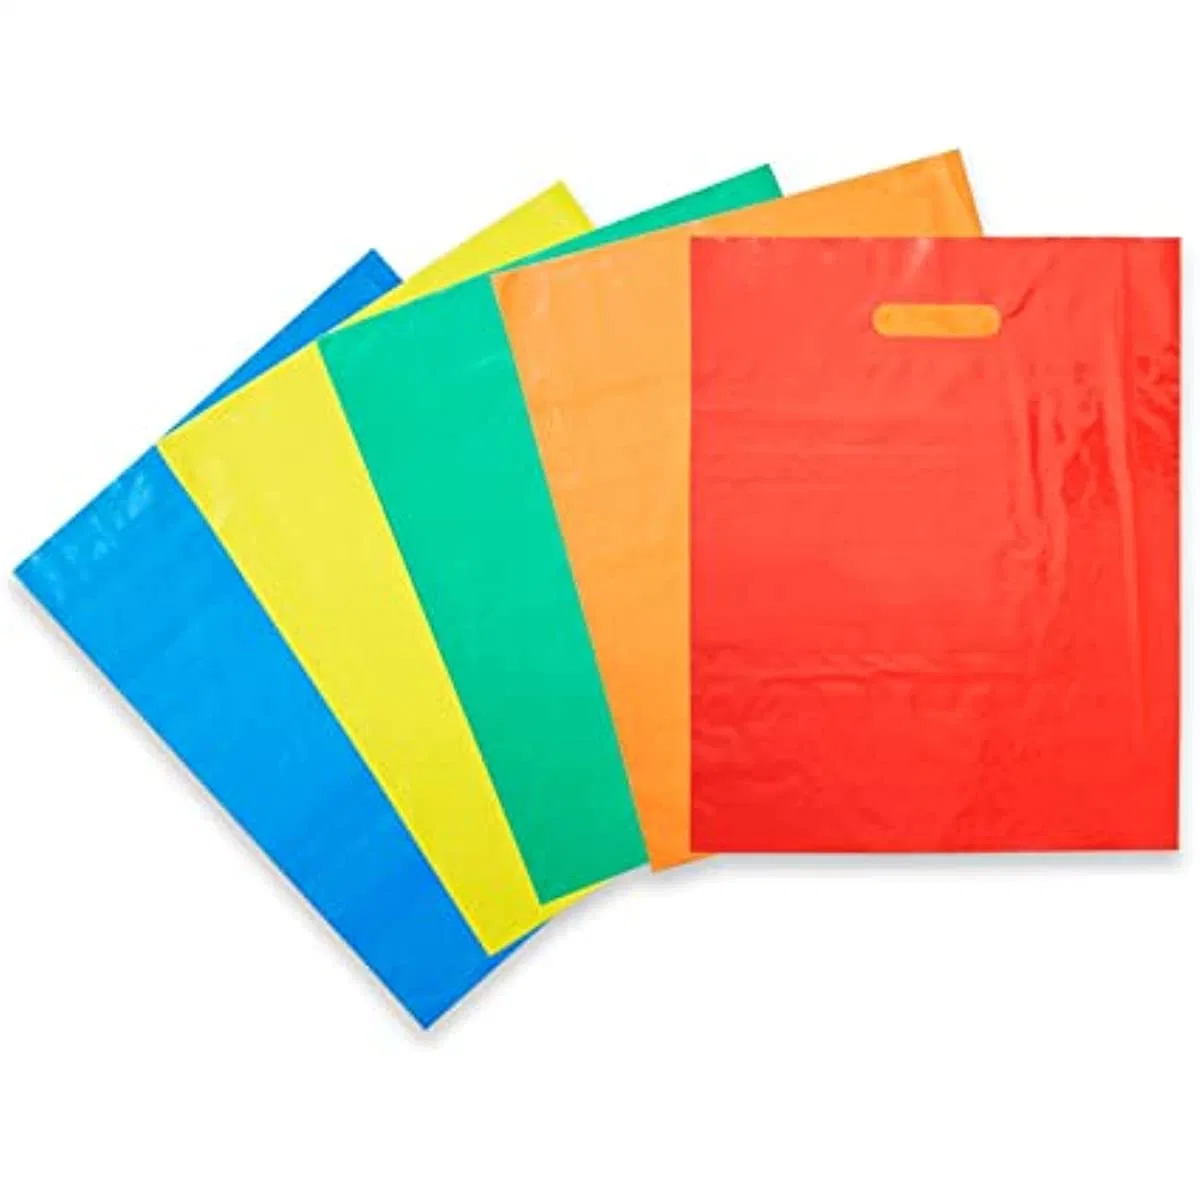 Plastic Merchandise Einkaufstaschen, Werbeartikel Custom Logo LDPE / HDPE Kunststoff Shopping die Cut Bag